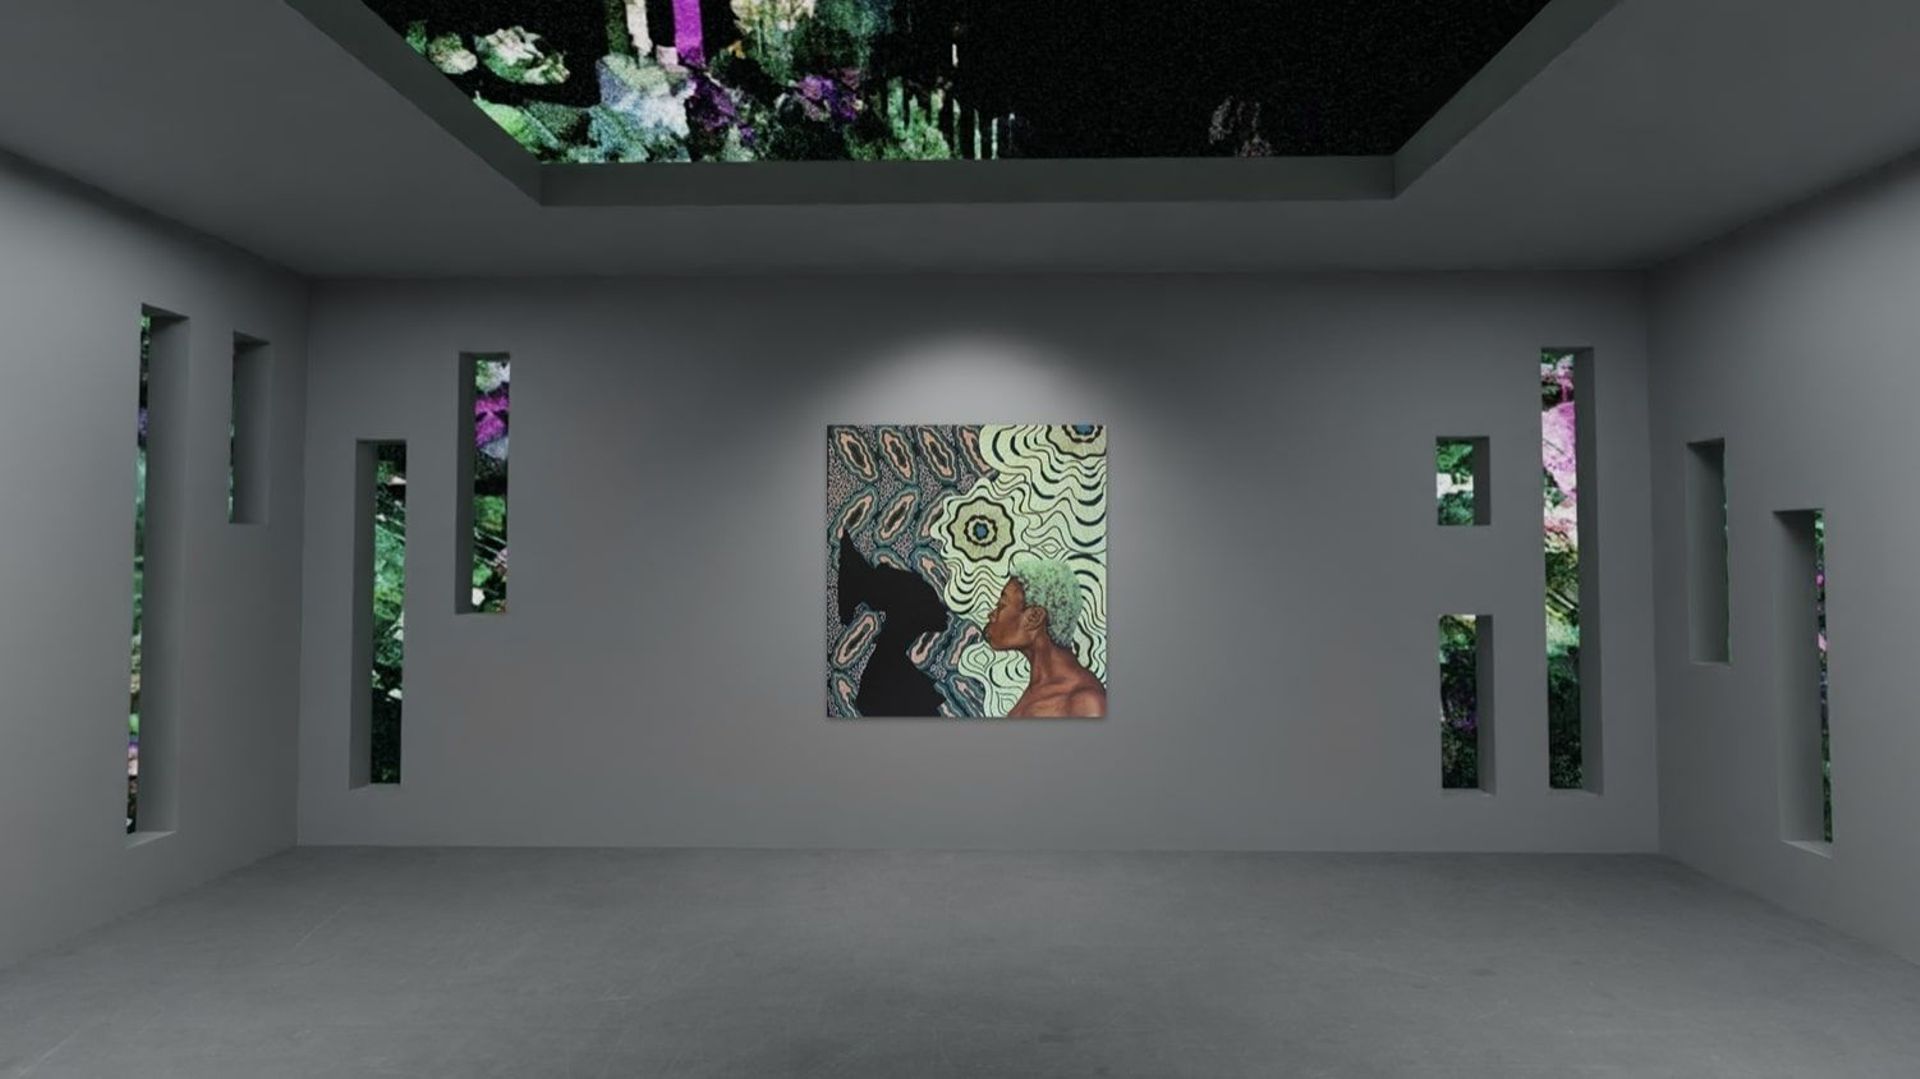 Présentation virtuelle par theVOV de "Untitled (Mangbetu)" de Shannon Bono et de "Seeping Out Skybox" de Sian Fan, dans le cadre de l'exposition numérique "Corpus Mentis" de Sarabande, organisée par Hikari Yokoyama et Trino Verkade (2021).